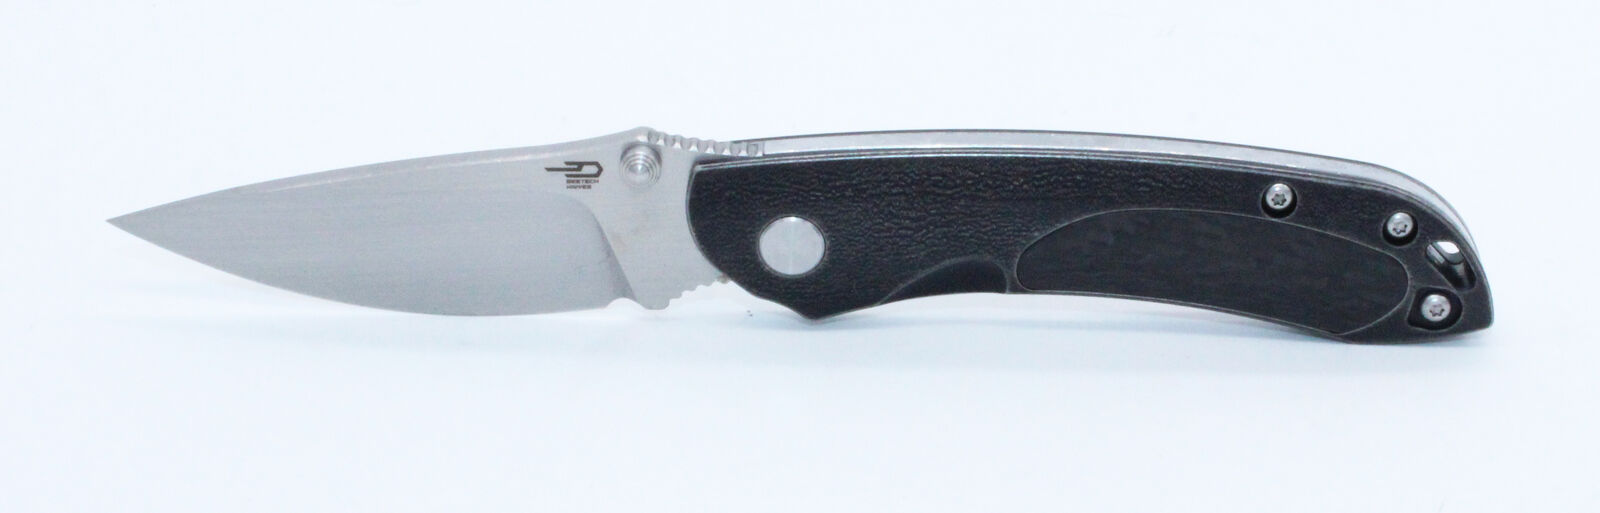 Bestech Junzi Slip Joint Knife Light Black Ti Handle Plain S35VN Blade BT1809F